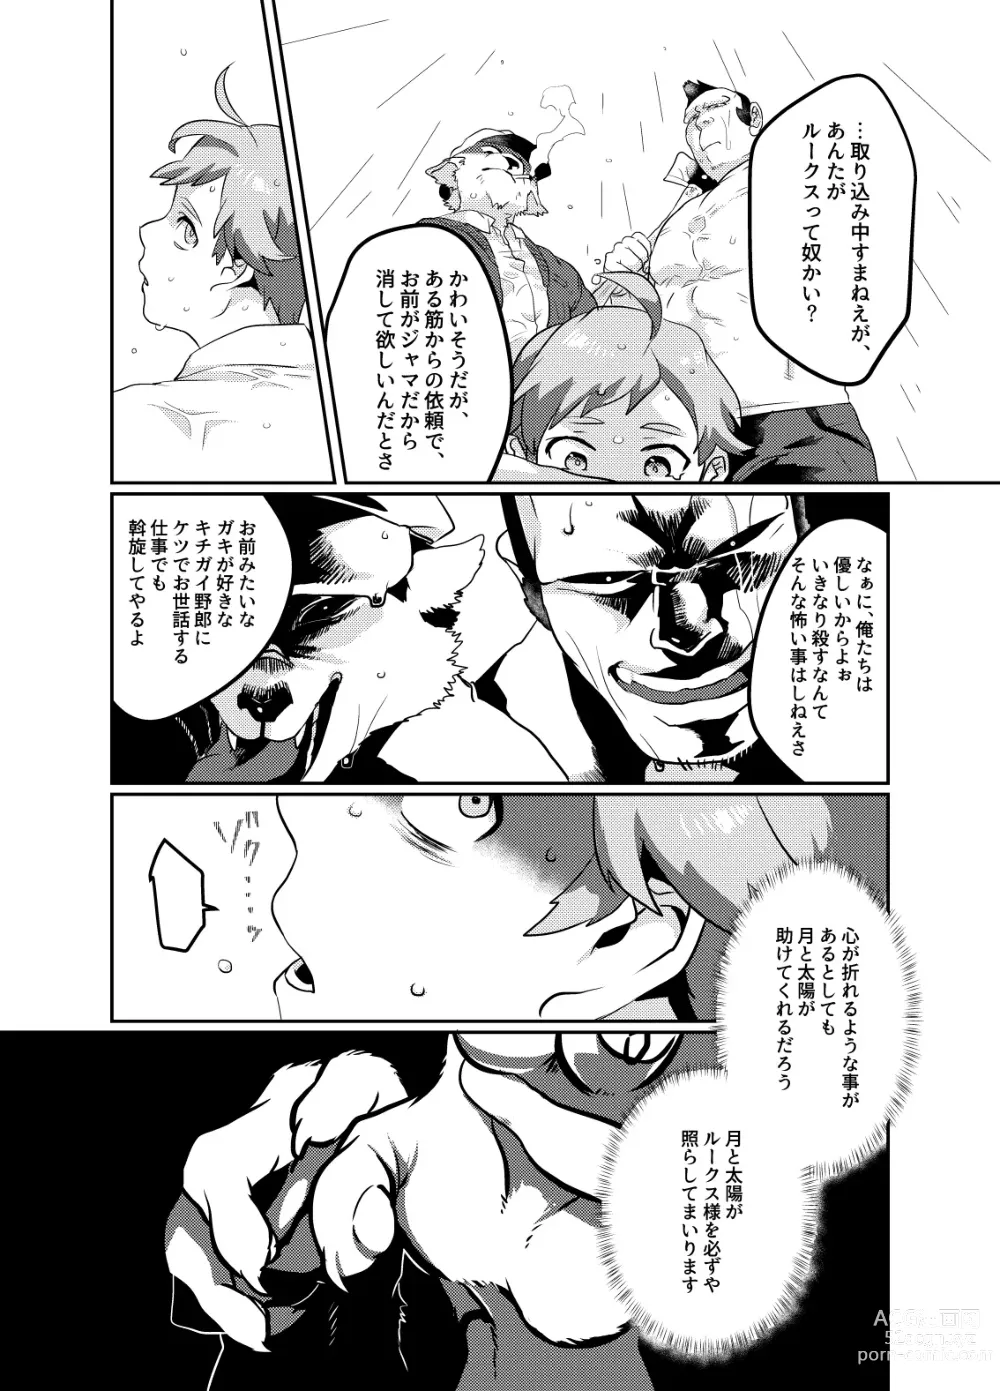 Page 6 of doujinshi Meido inHEAVEN